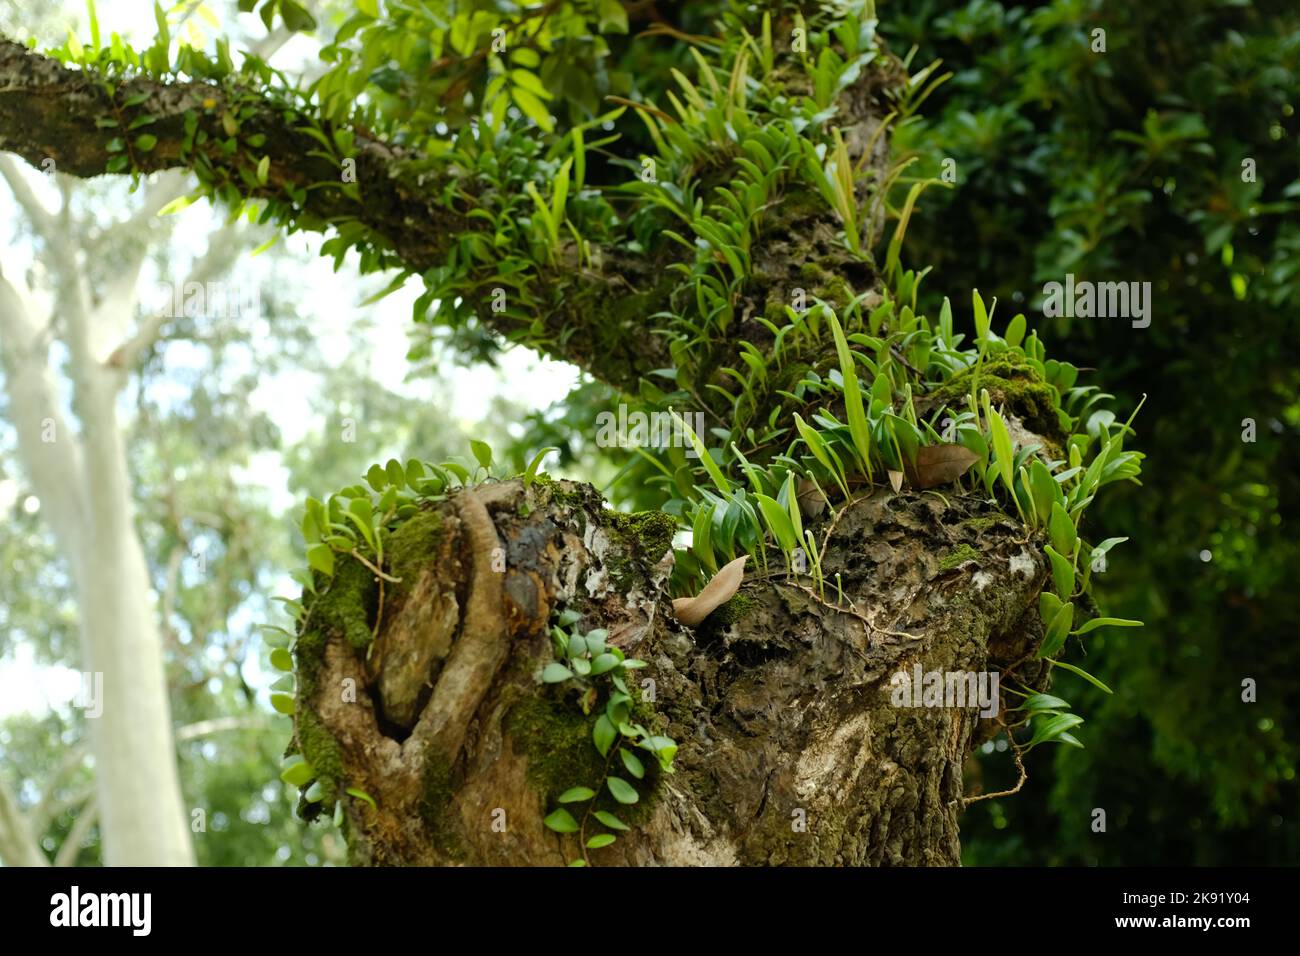 Die grünen Bulbophyllum unauffällig Pflanzen wachsen auf Baumstamm Stockfoto